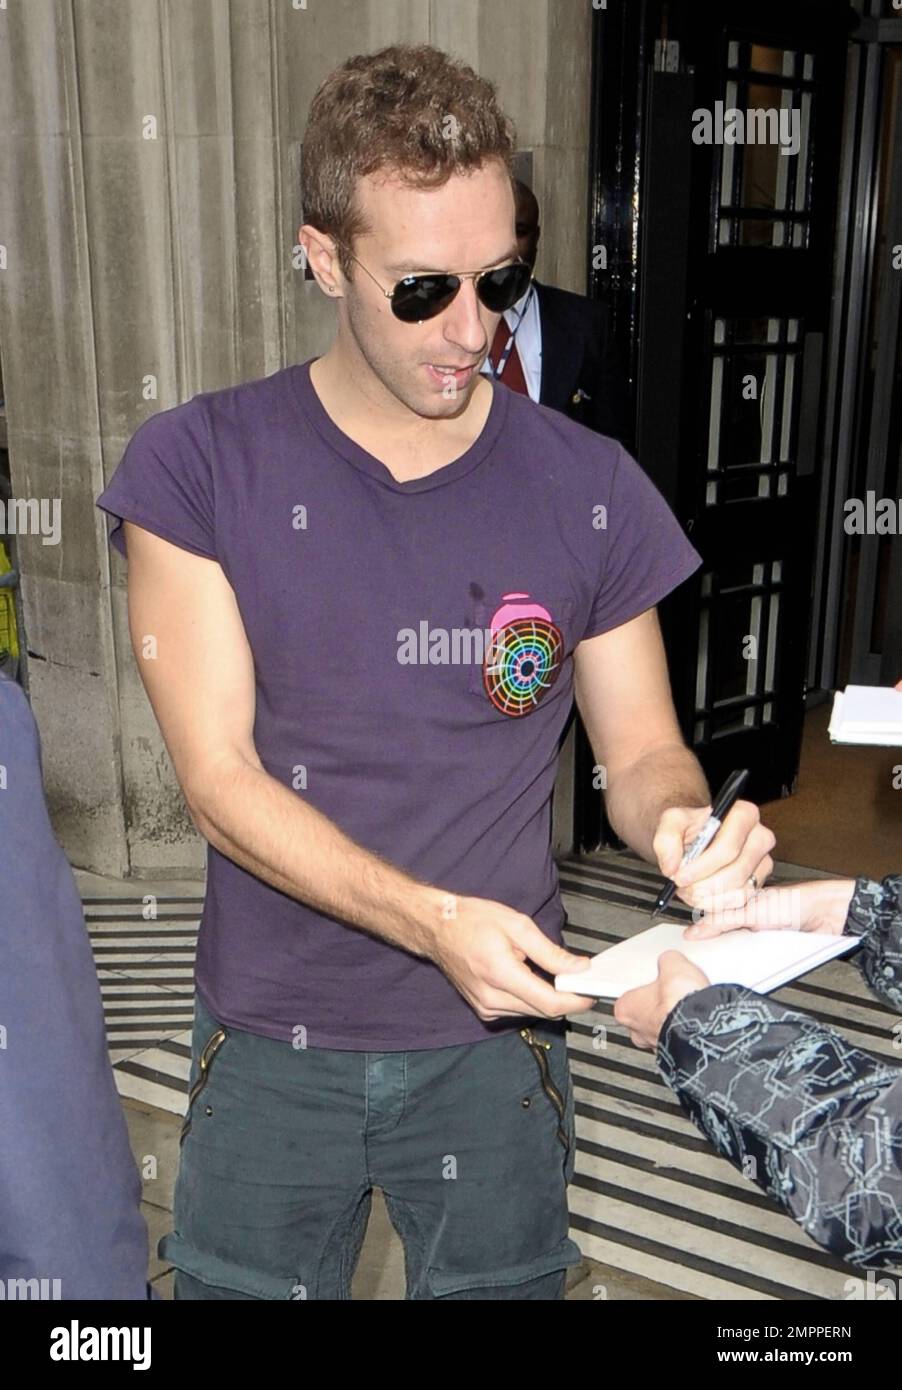 Chris Martin, líder de 'Coldplay', fue visto fuera de BBC Radio 2 con una  camiseta morada, pantalones grises, zapatillas blancas y gafas de sol.  Martin se tomó un tiempo para firmar autógrafos